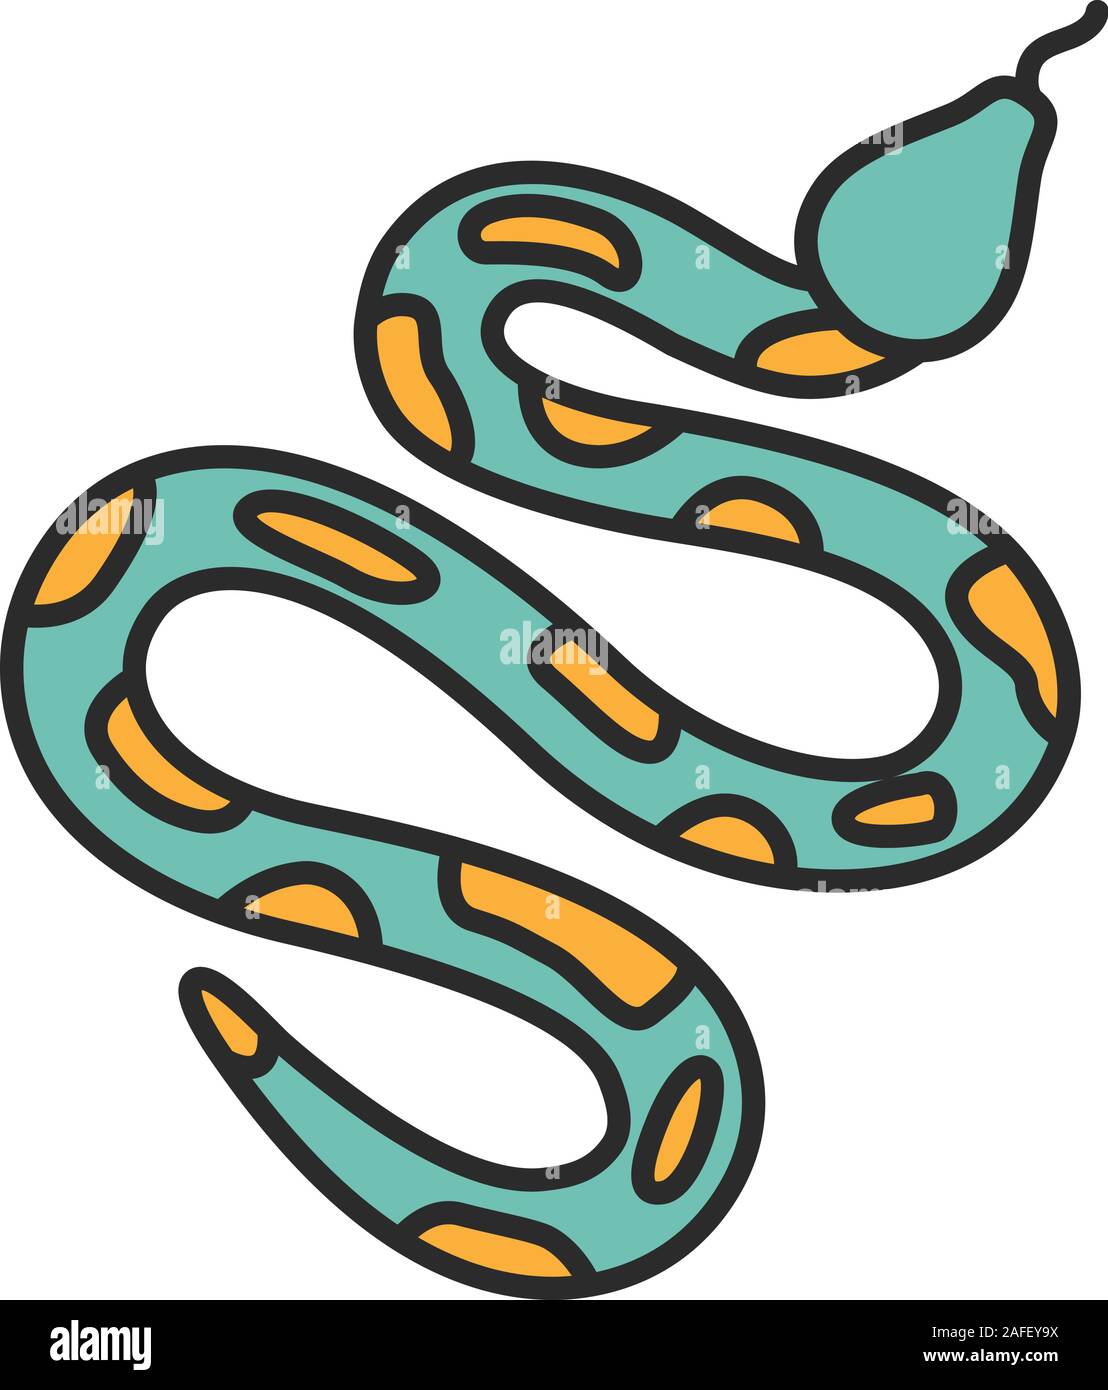 python boa constrictor